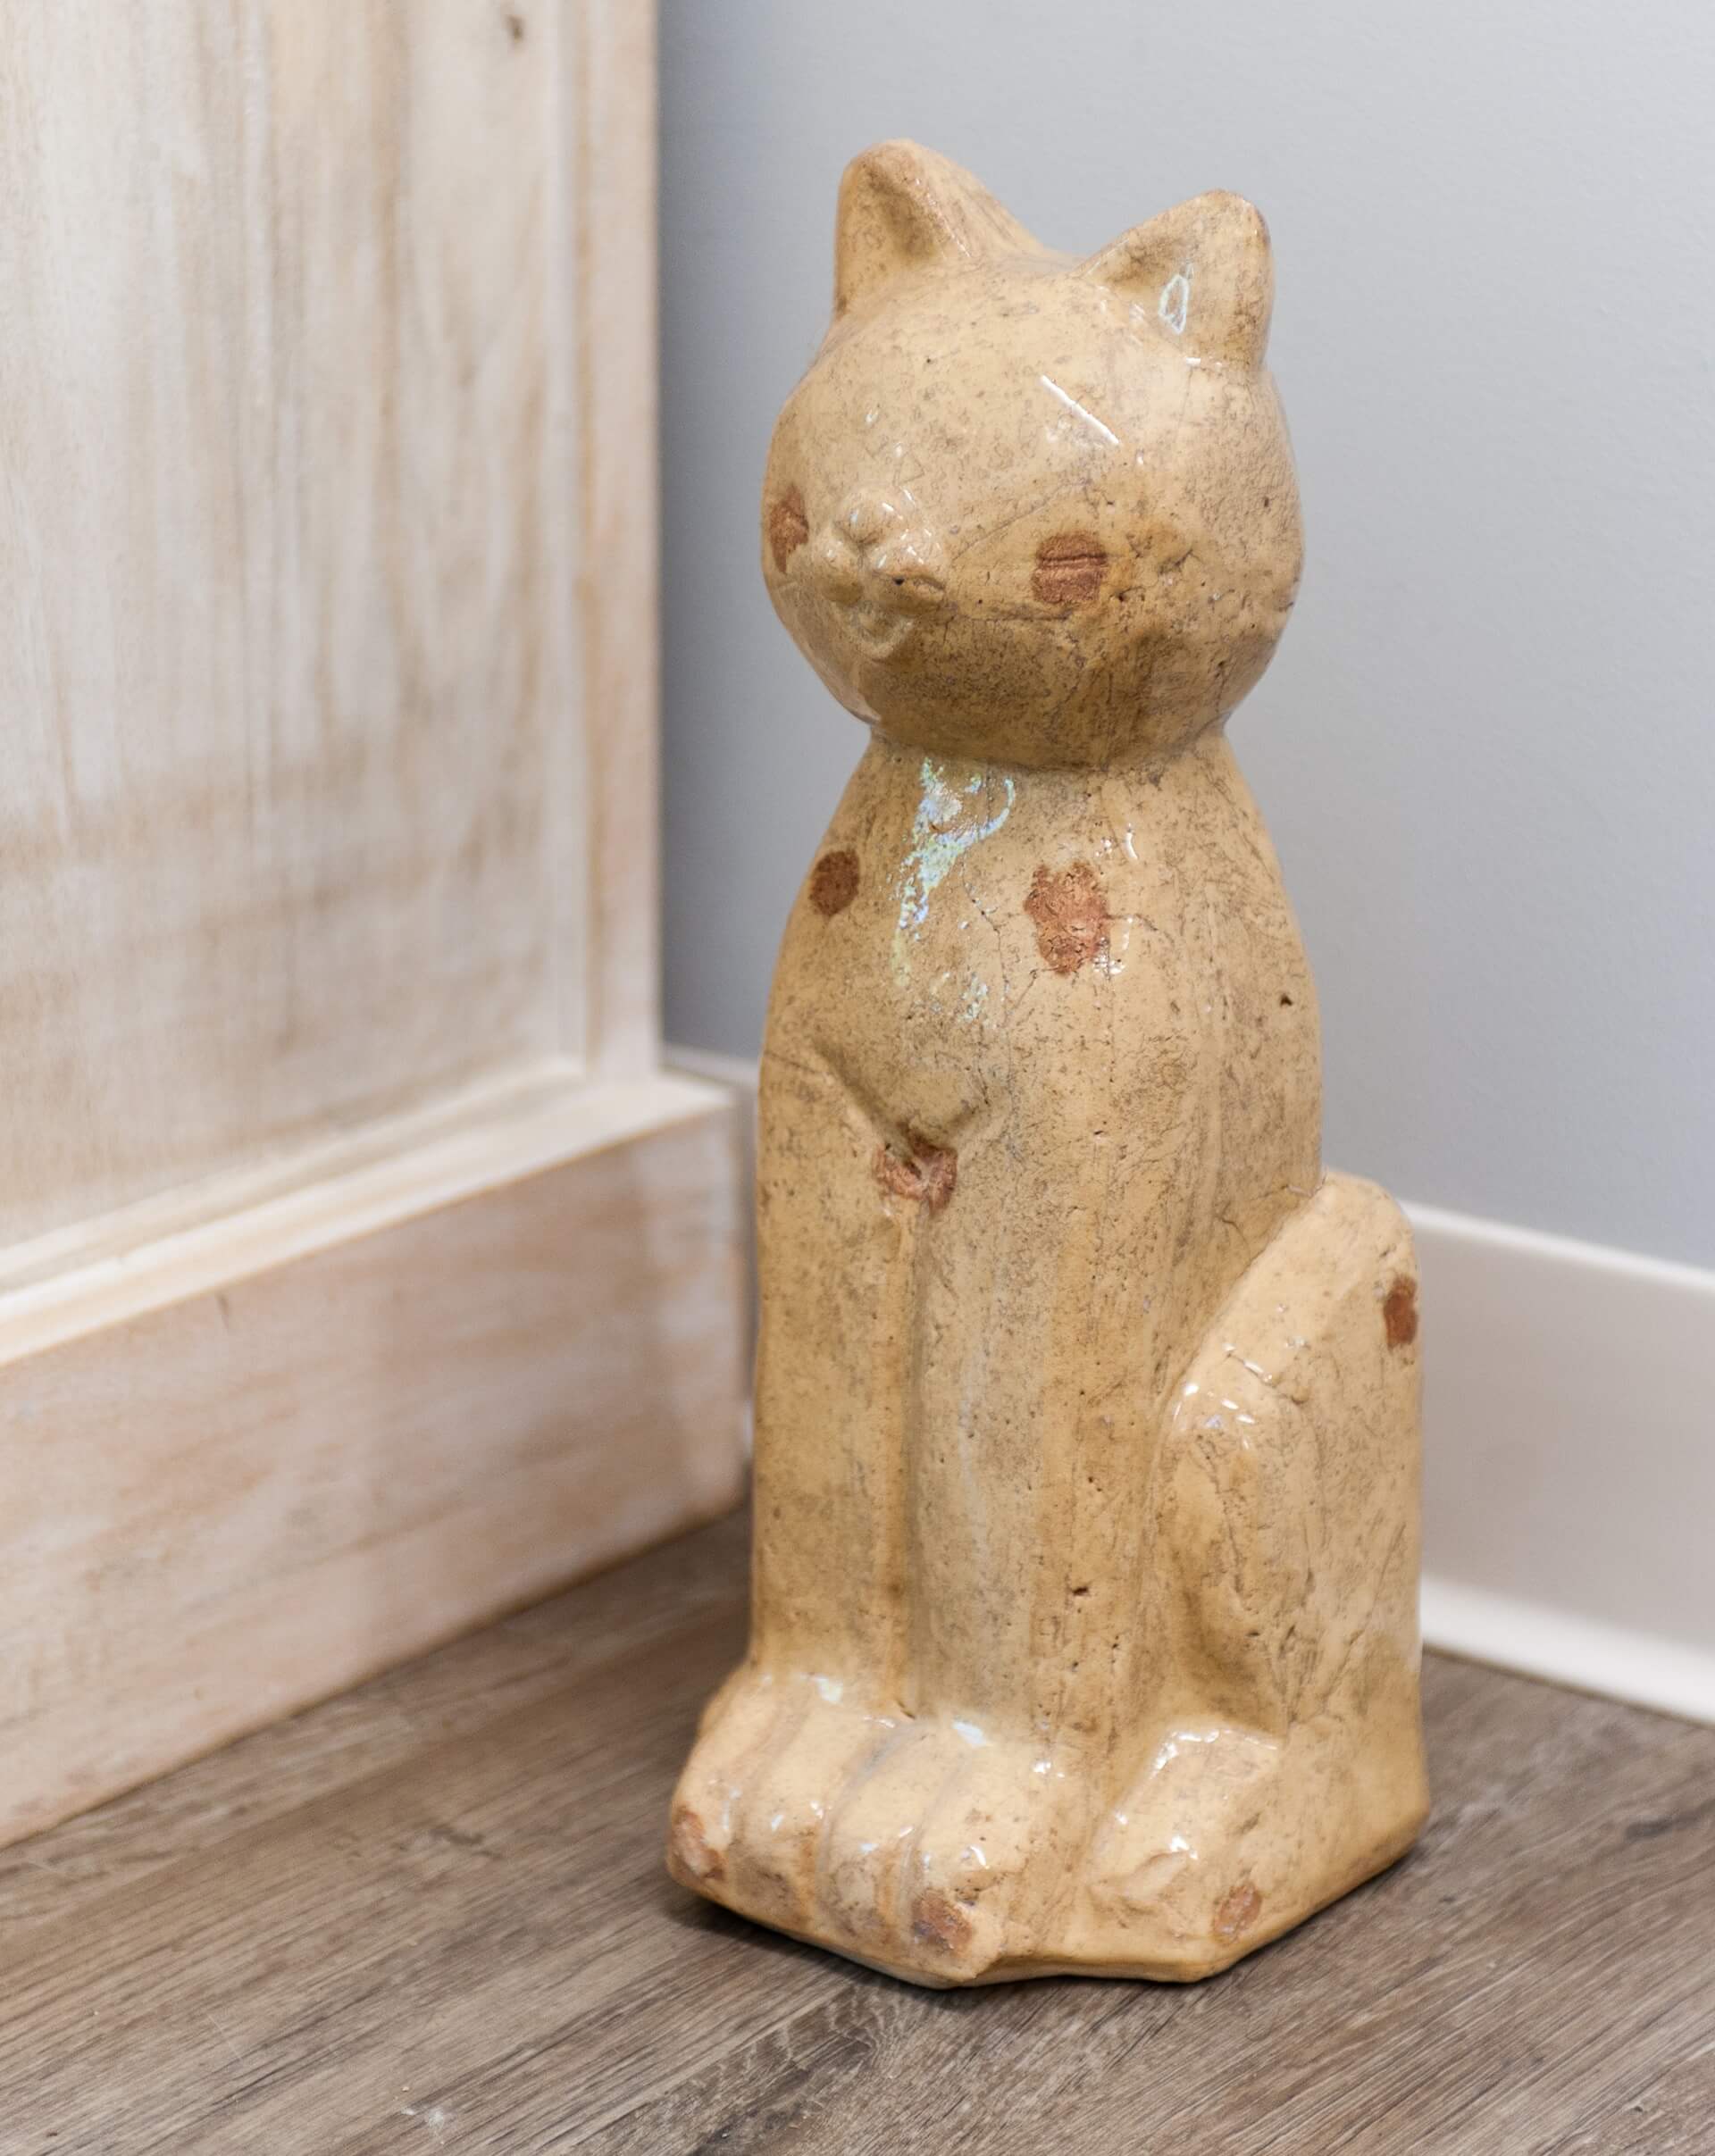 A ceramic cat statue